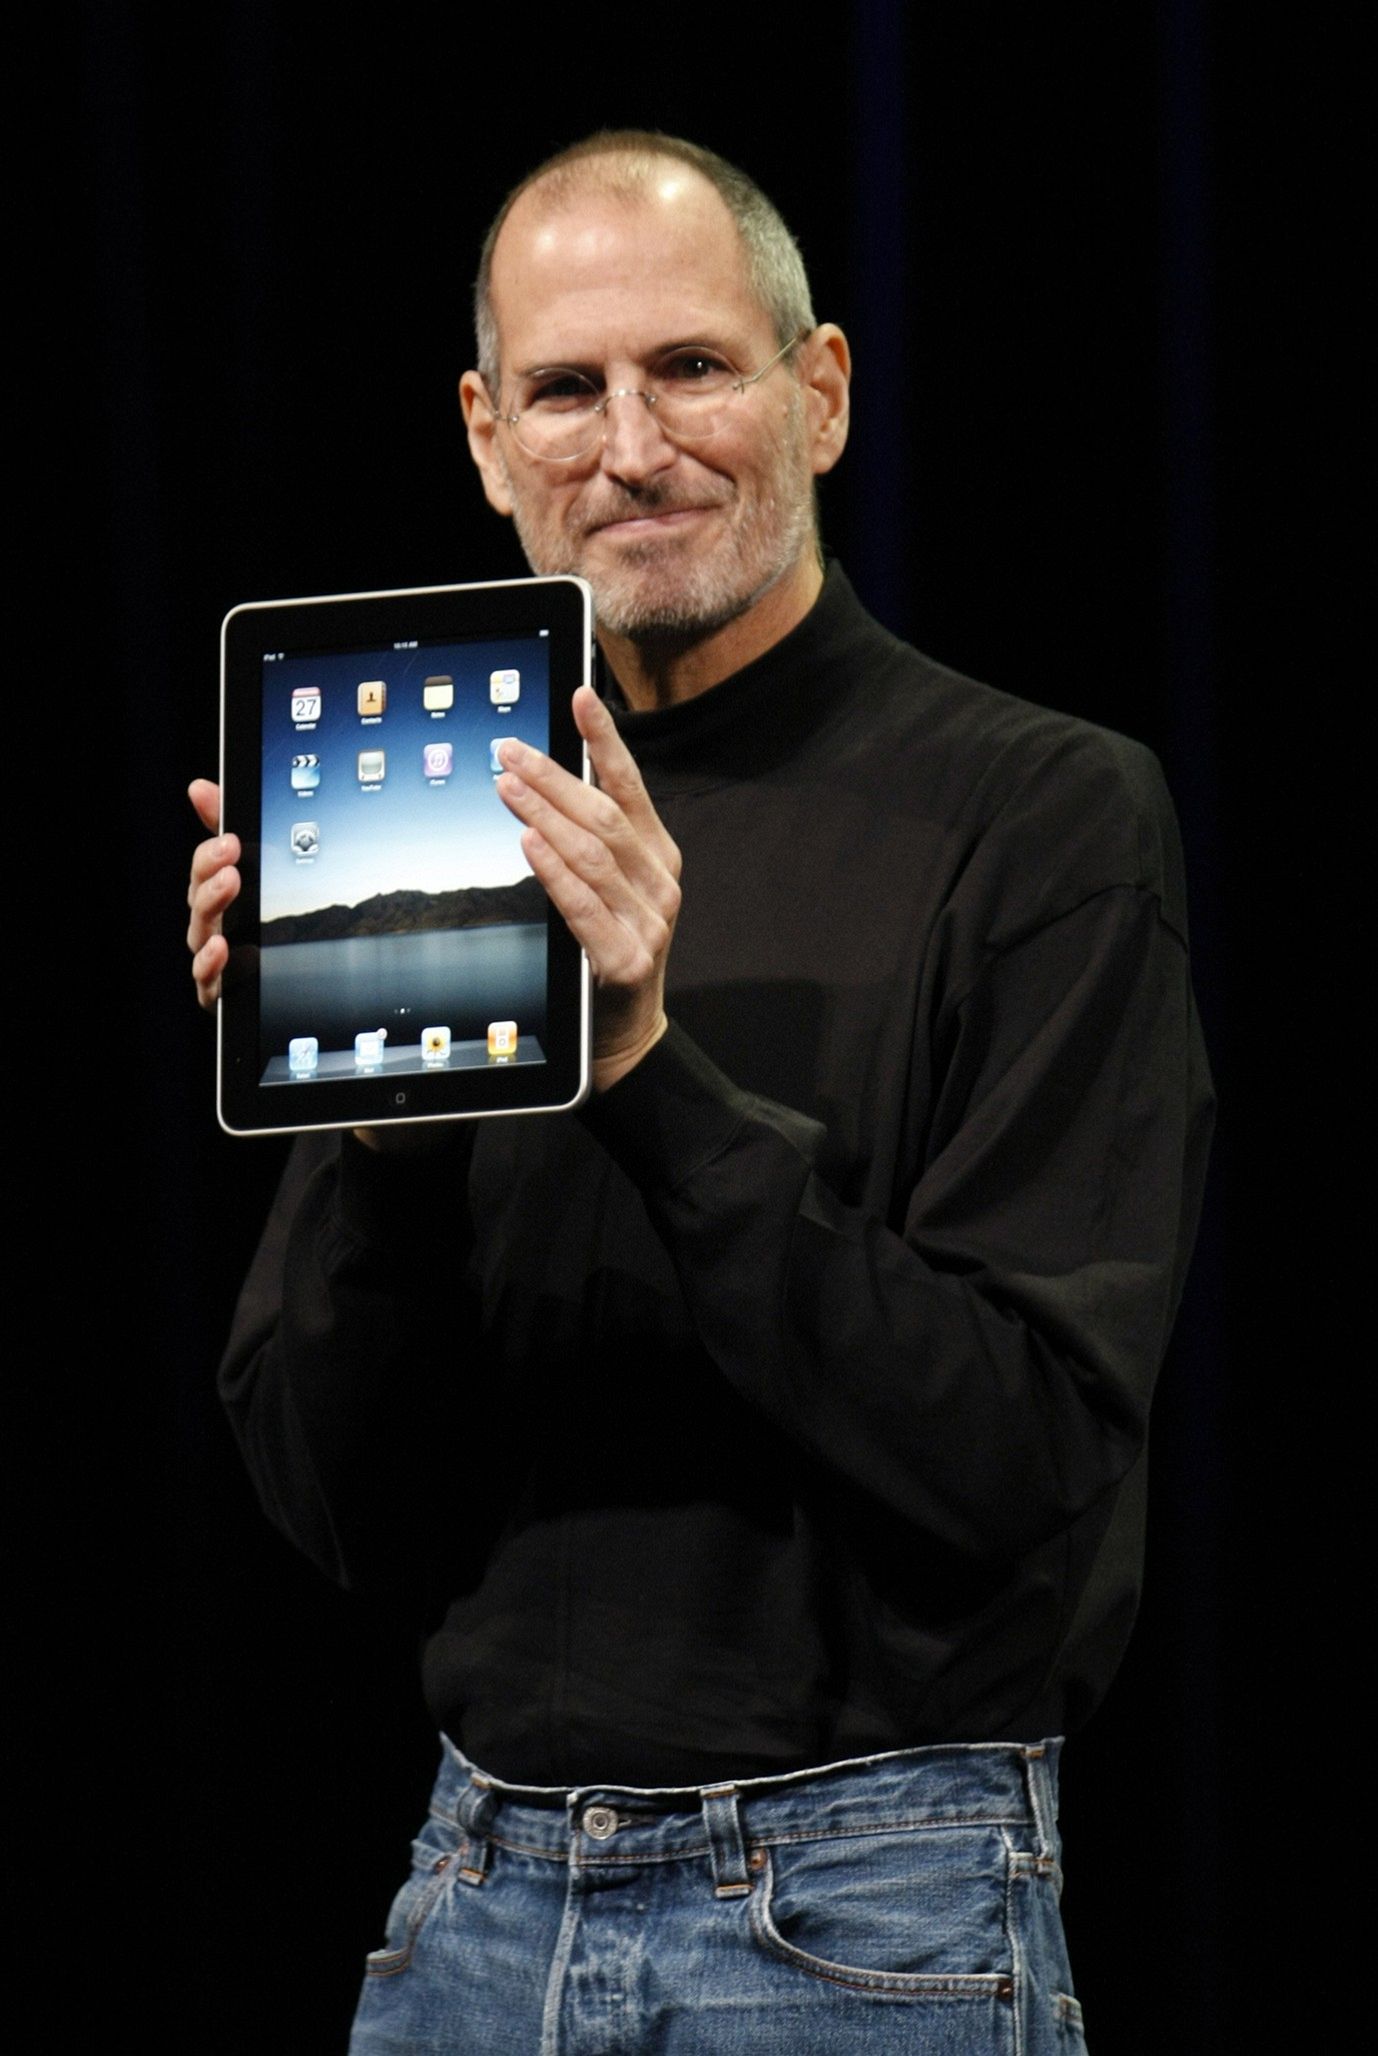 Tehdejší šéf Applu Steve Jobs během představování tabletu iPad